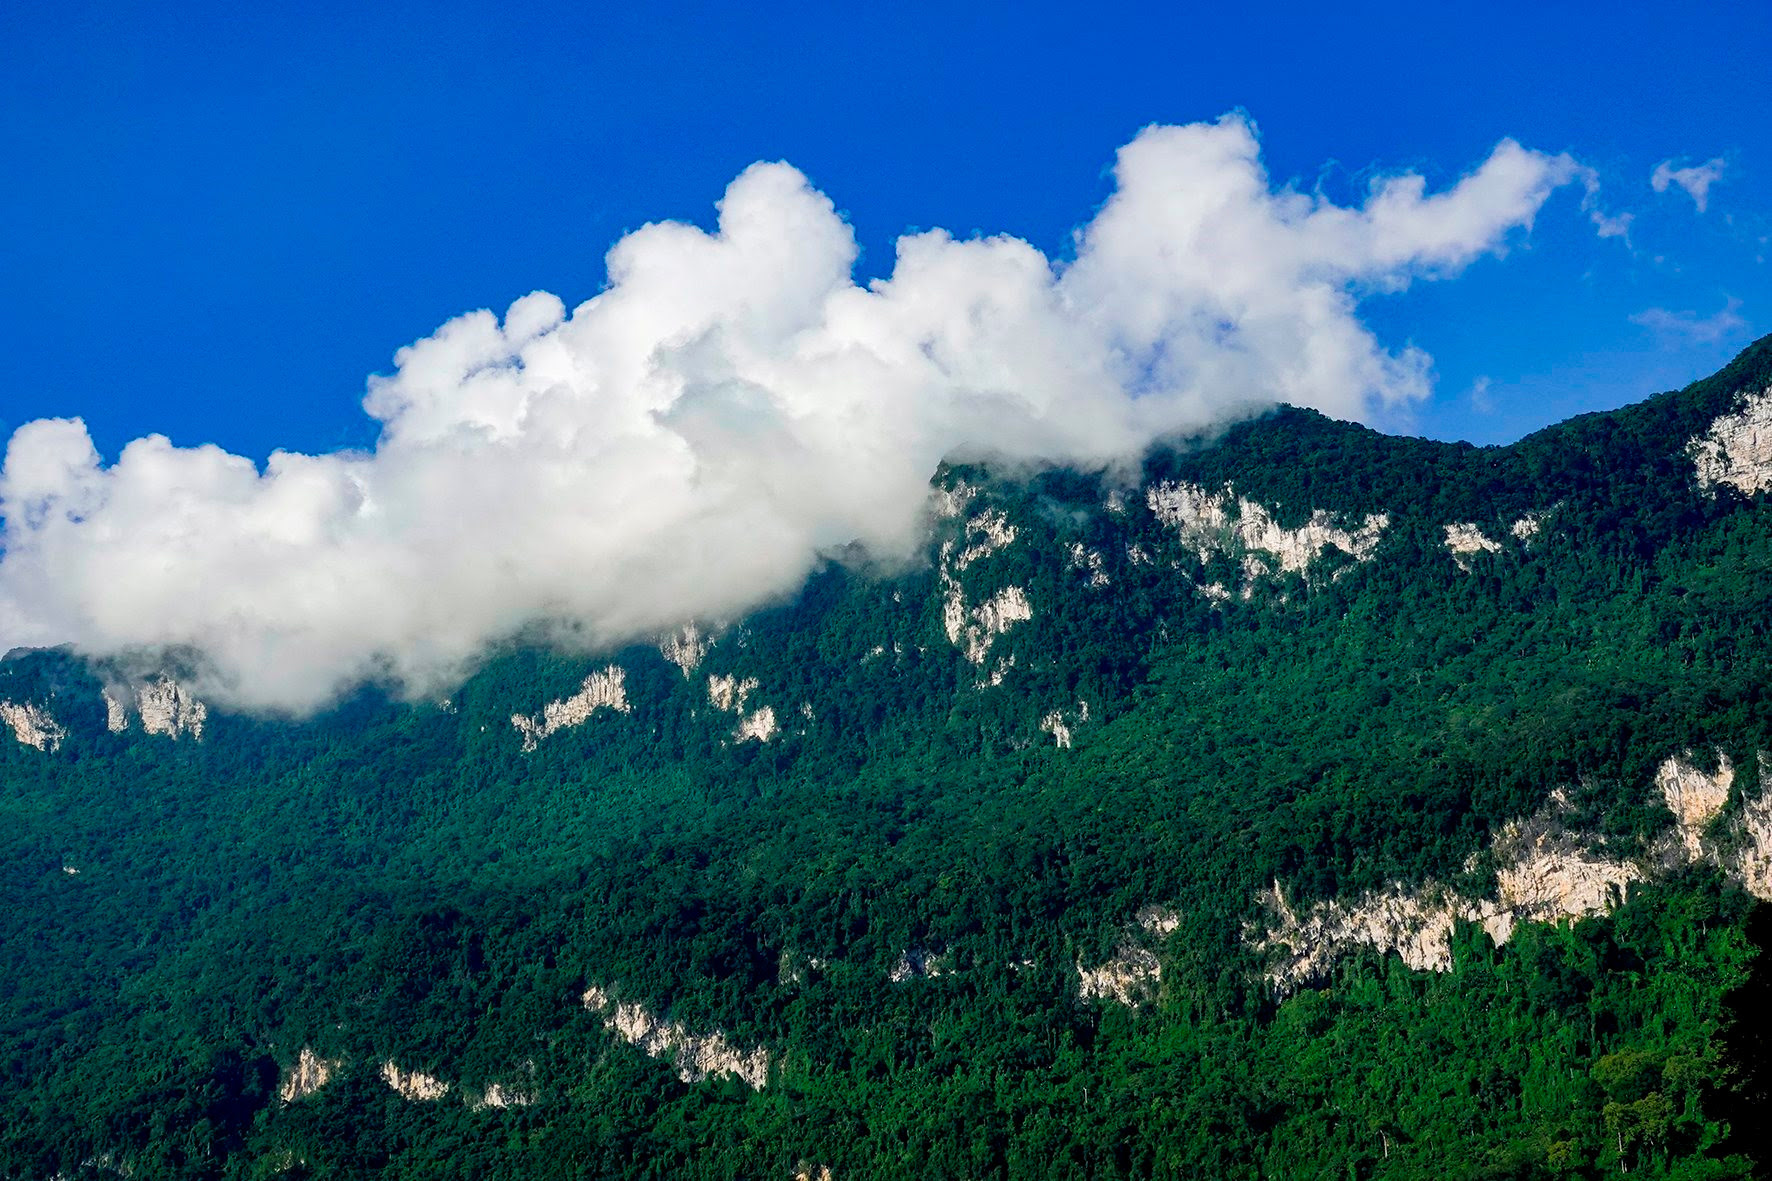 Hồ nước ngọt nhân tạo lớn nhất Tuyên Quang hiện ra đẹp như phim, có ngọn thác đổ, rừng nguyên sinh - Ảnh 4.